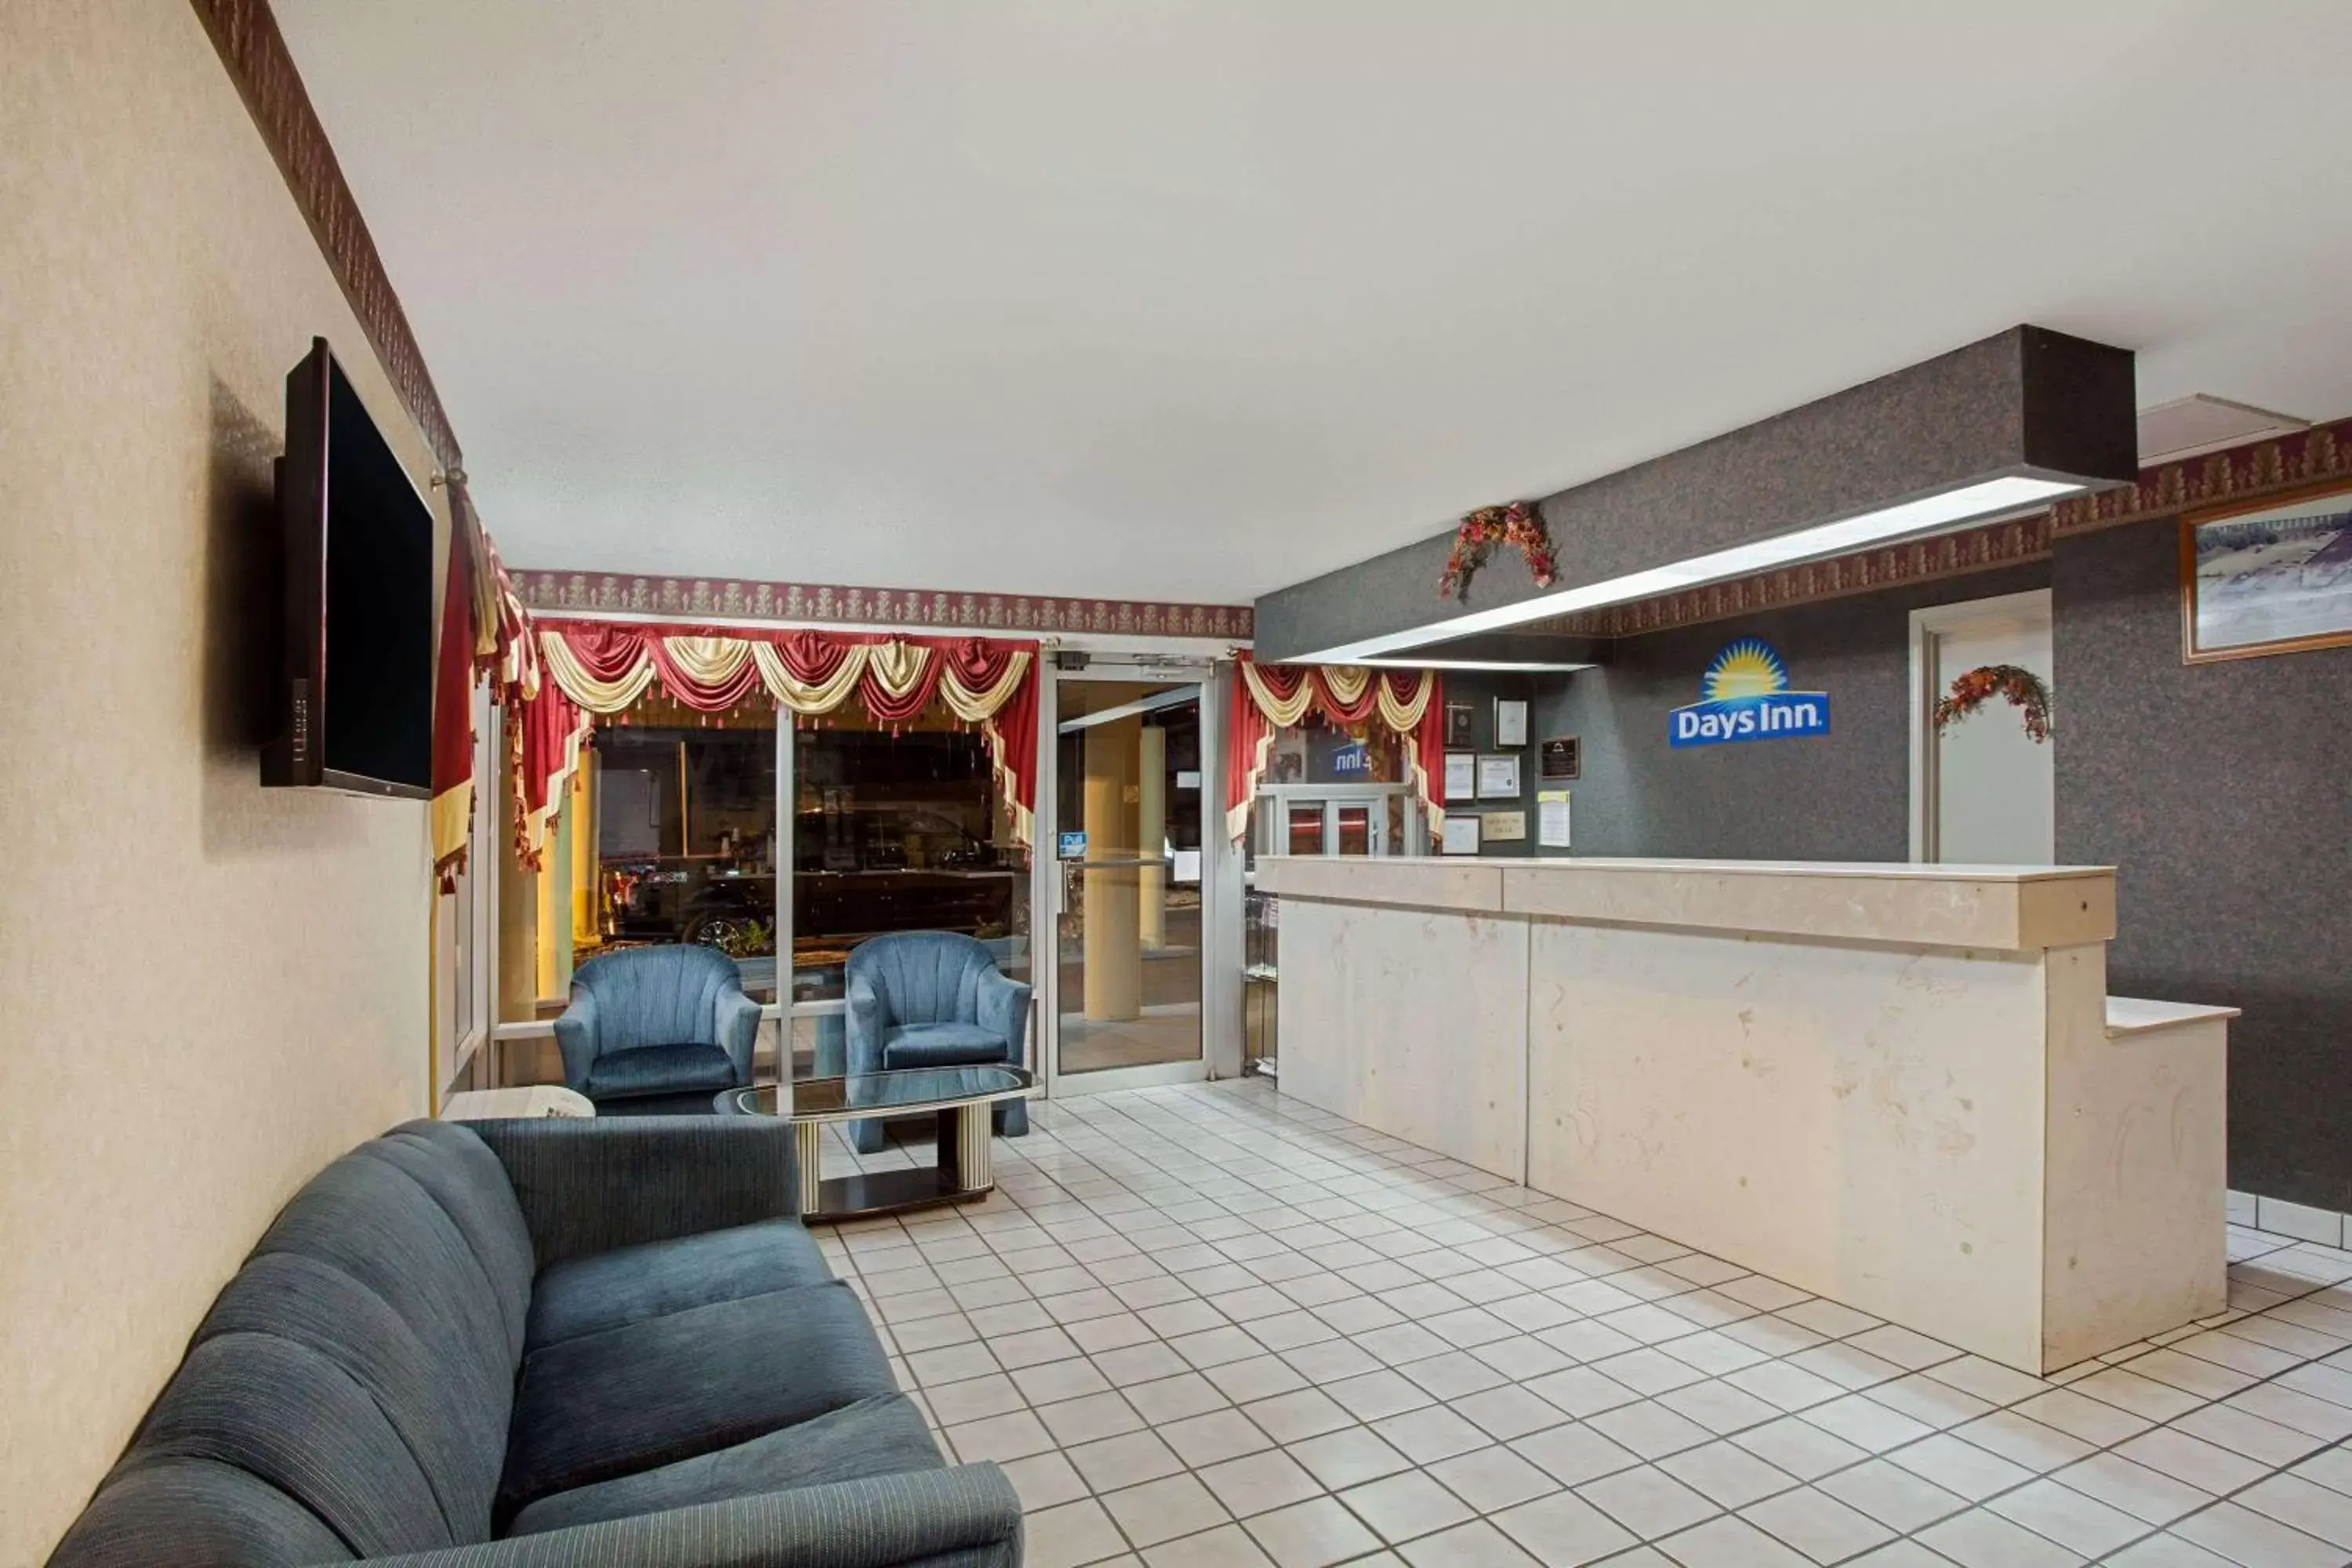 Lobby or reception, Lobby/Reception in Days Inn by Wyndham Greeneville